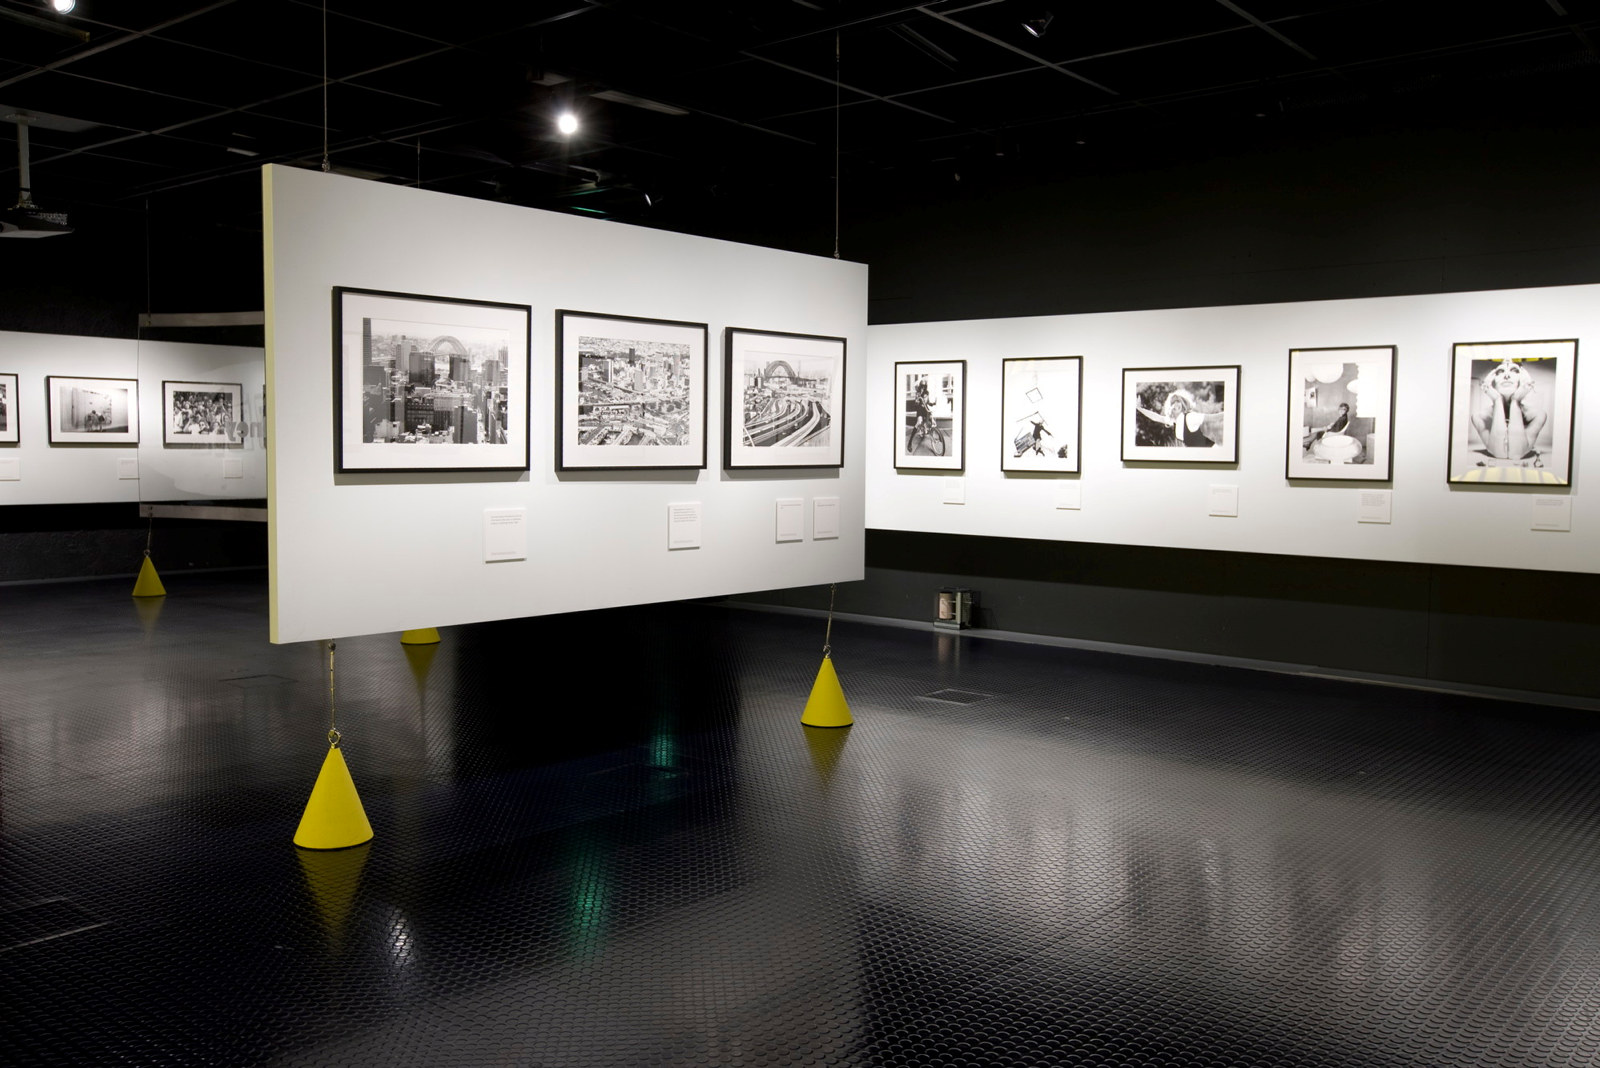 David Mist: Swinging Sydney exhibition installation view